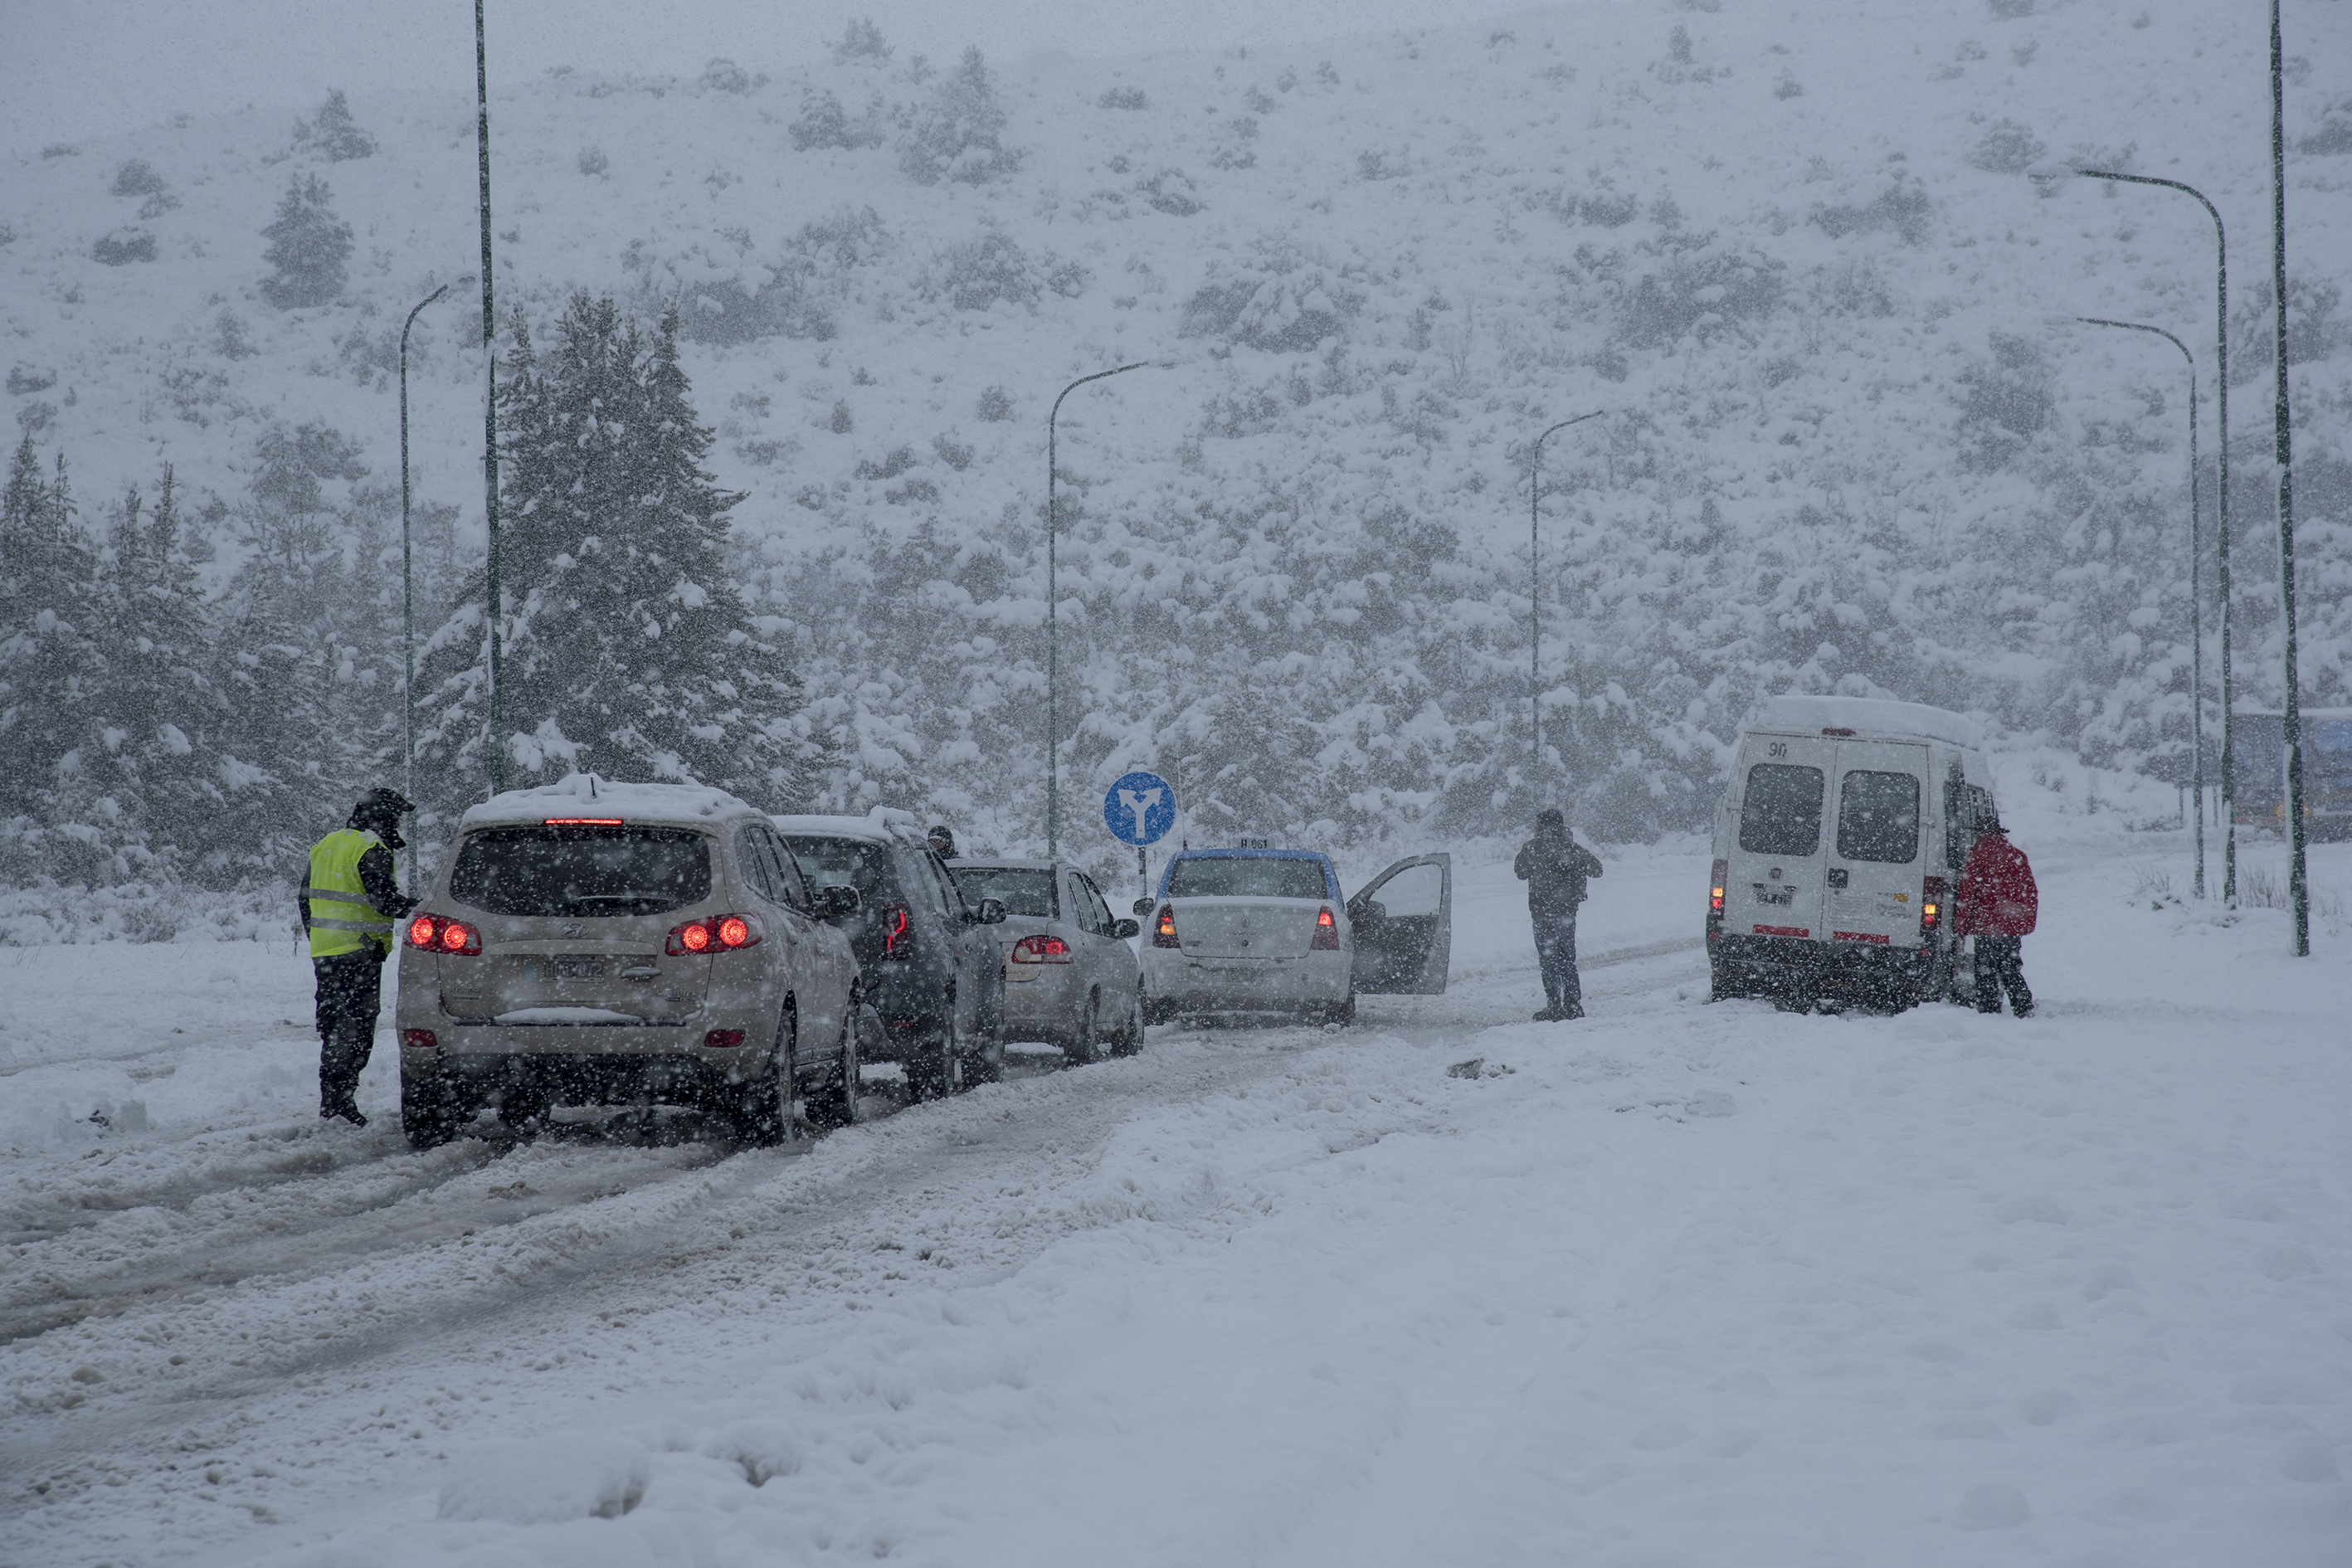 La Ruta aeropuerto cortada por la intensa nevada en la zona. Foto: Marcelo Martinez